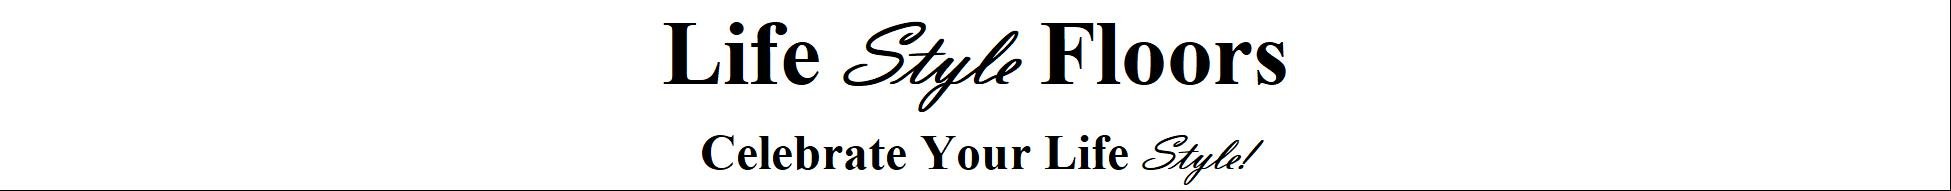 lifestyle floors logo and tagline